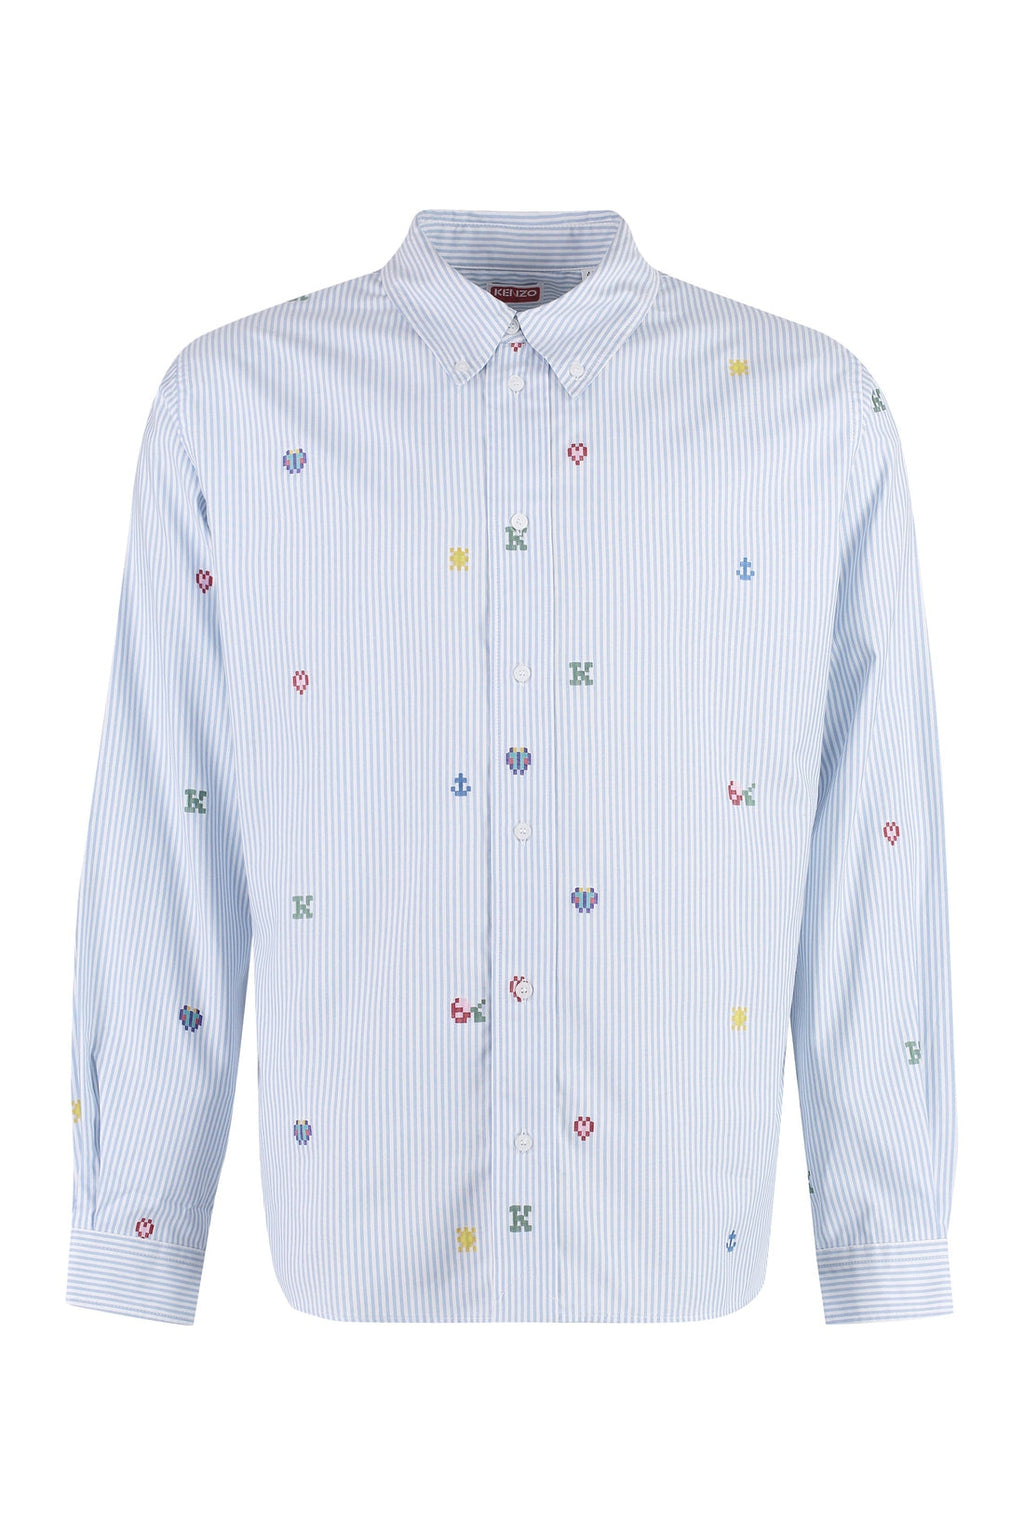 Kenzo-OUTLET-SALE-Button-down collar cotton shirt-ARCHIVIST